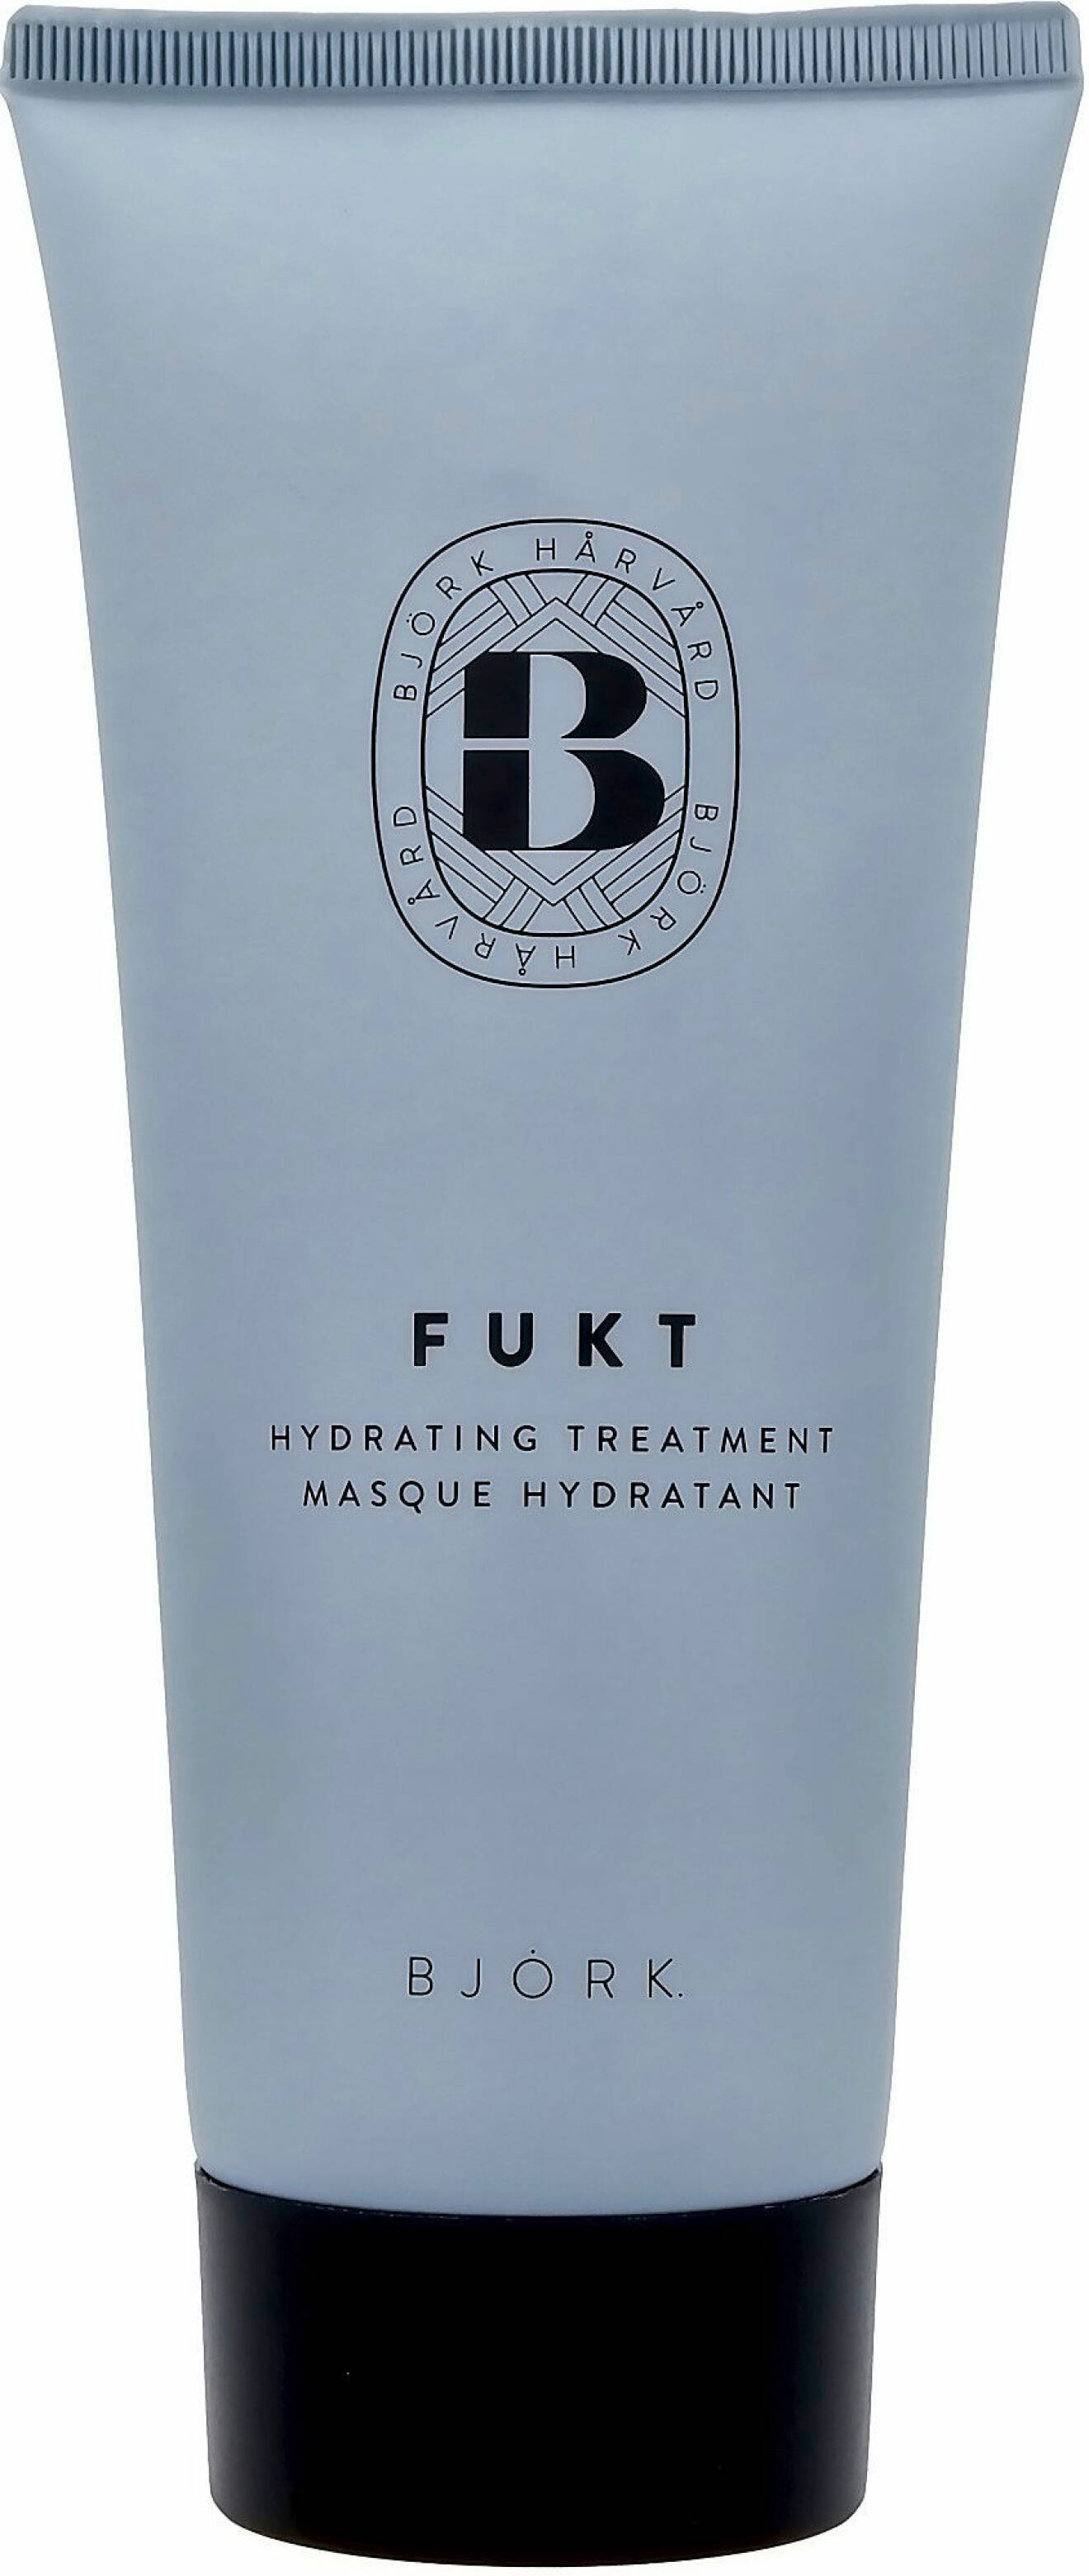 Fukt Hydrating Treatment från Björk